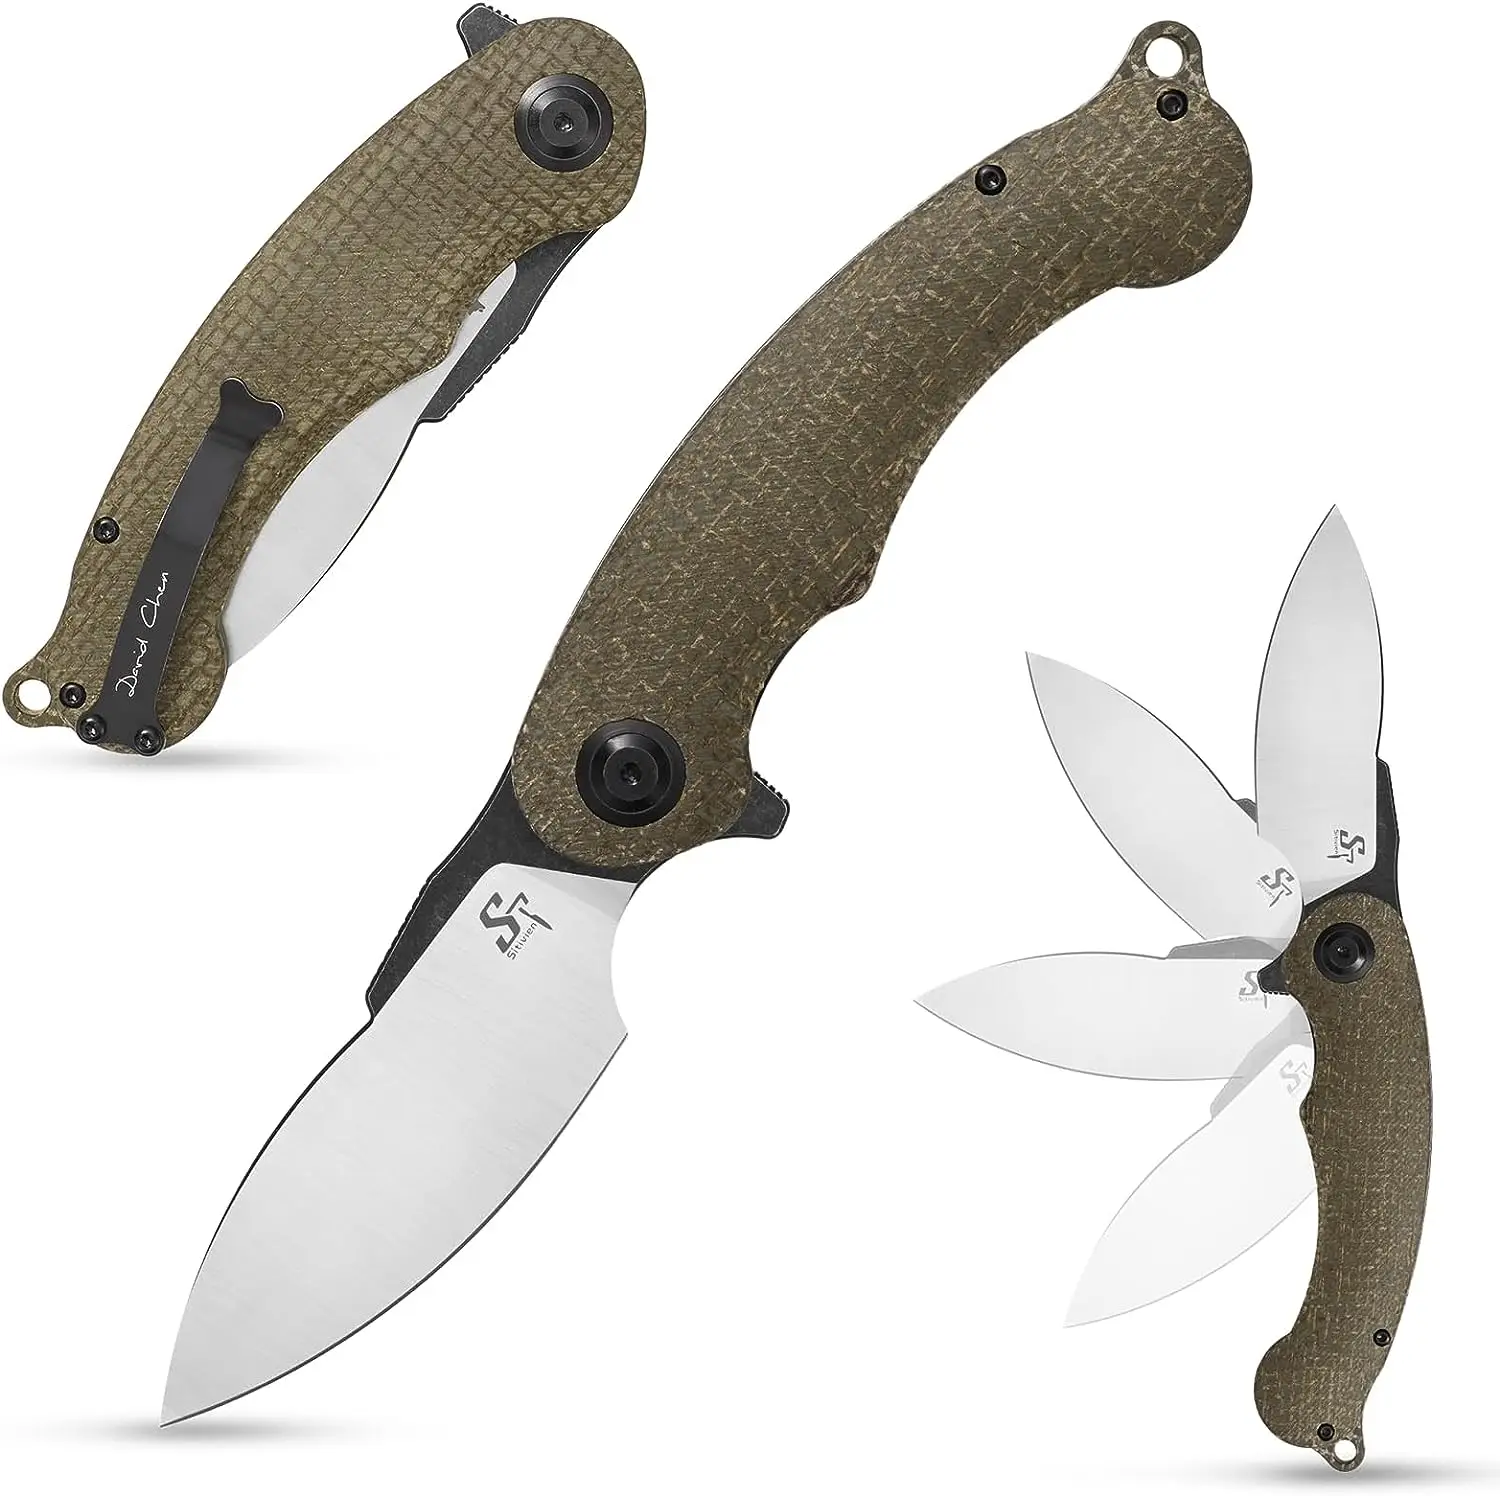 Sitivien ST157 Folding Knife Sandvik 14C28N Steel Blade G10 Micarta Handle EDC Tool Pocket Knifes for